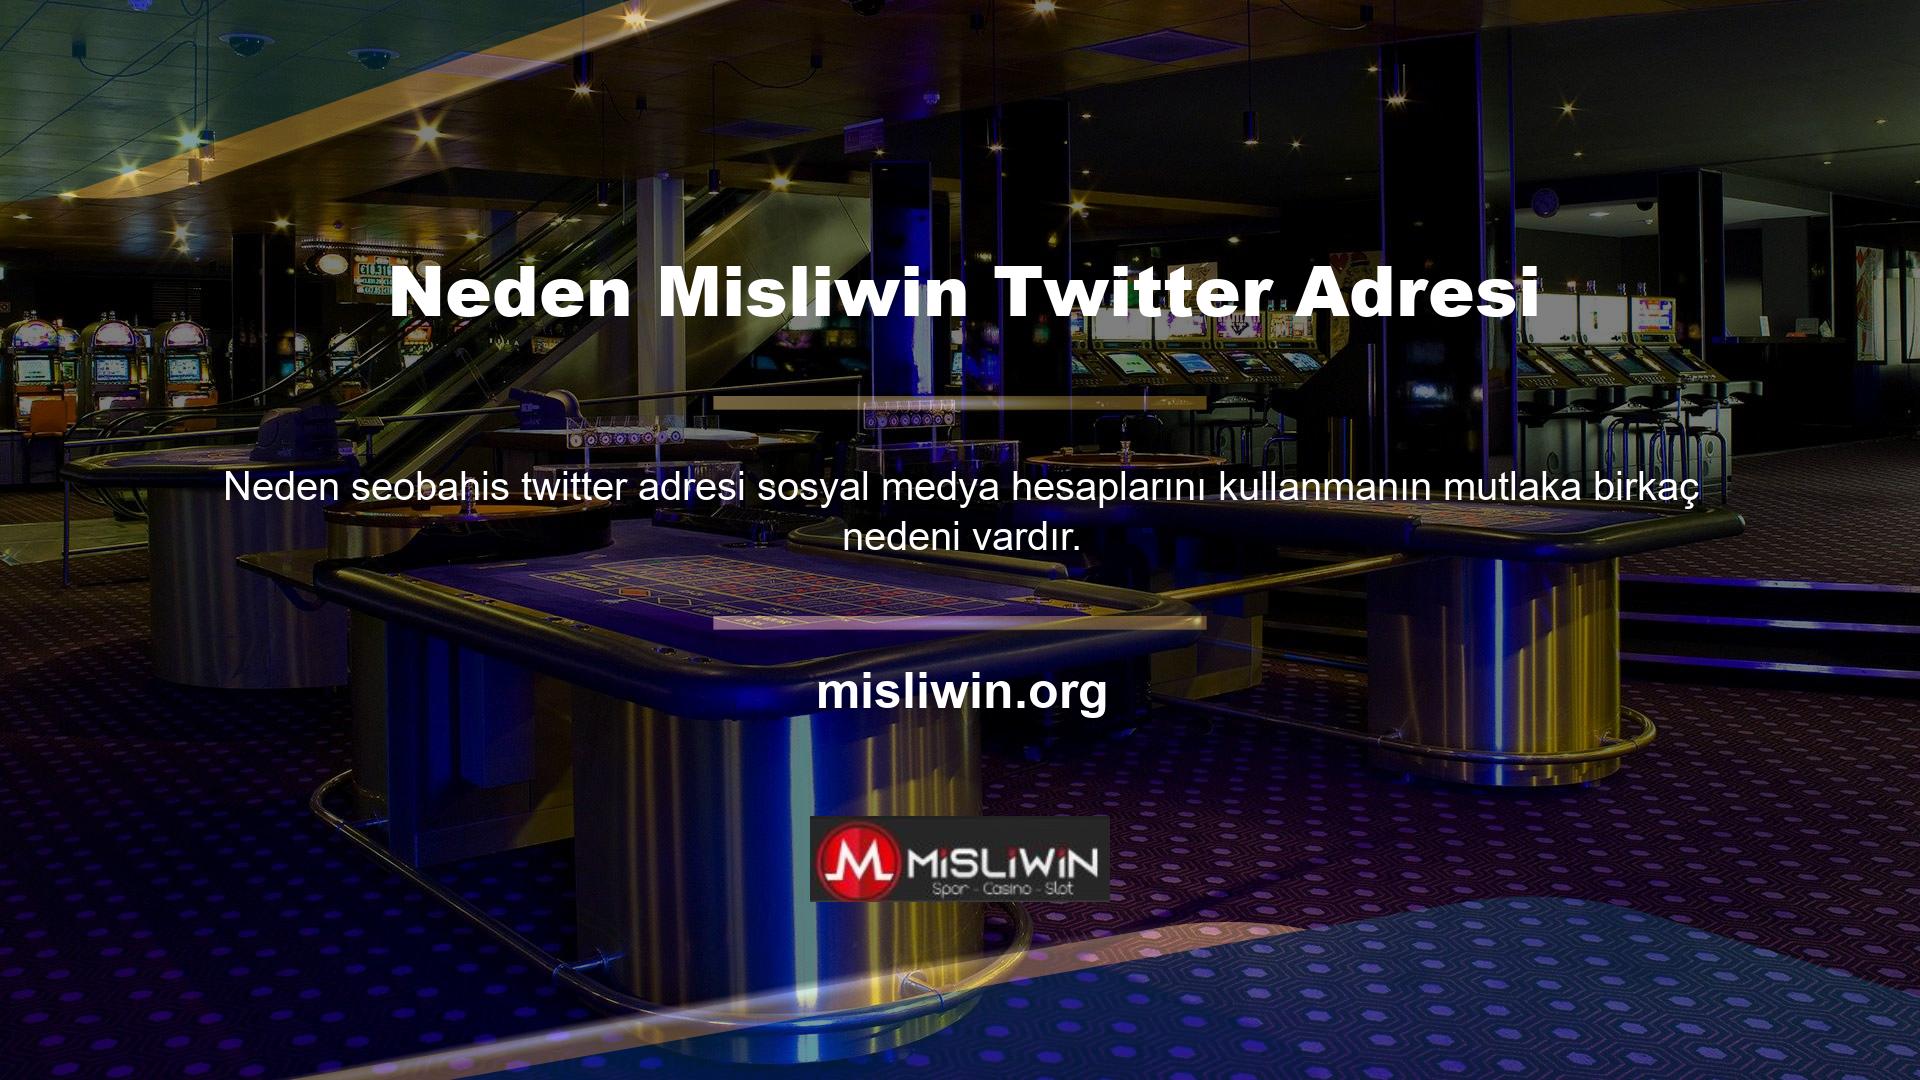 Misliwin neden Twitter kullanıyor? Önergenin, internet sitelerinin tanıtımını yapmak amacıyla sıklıkla kullanılan sosyal medya platformunda internet sitesinin anlatılması amacıyla gündeme getirildiği görülüyor